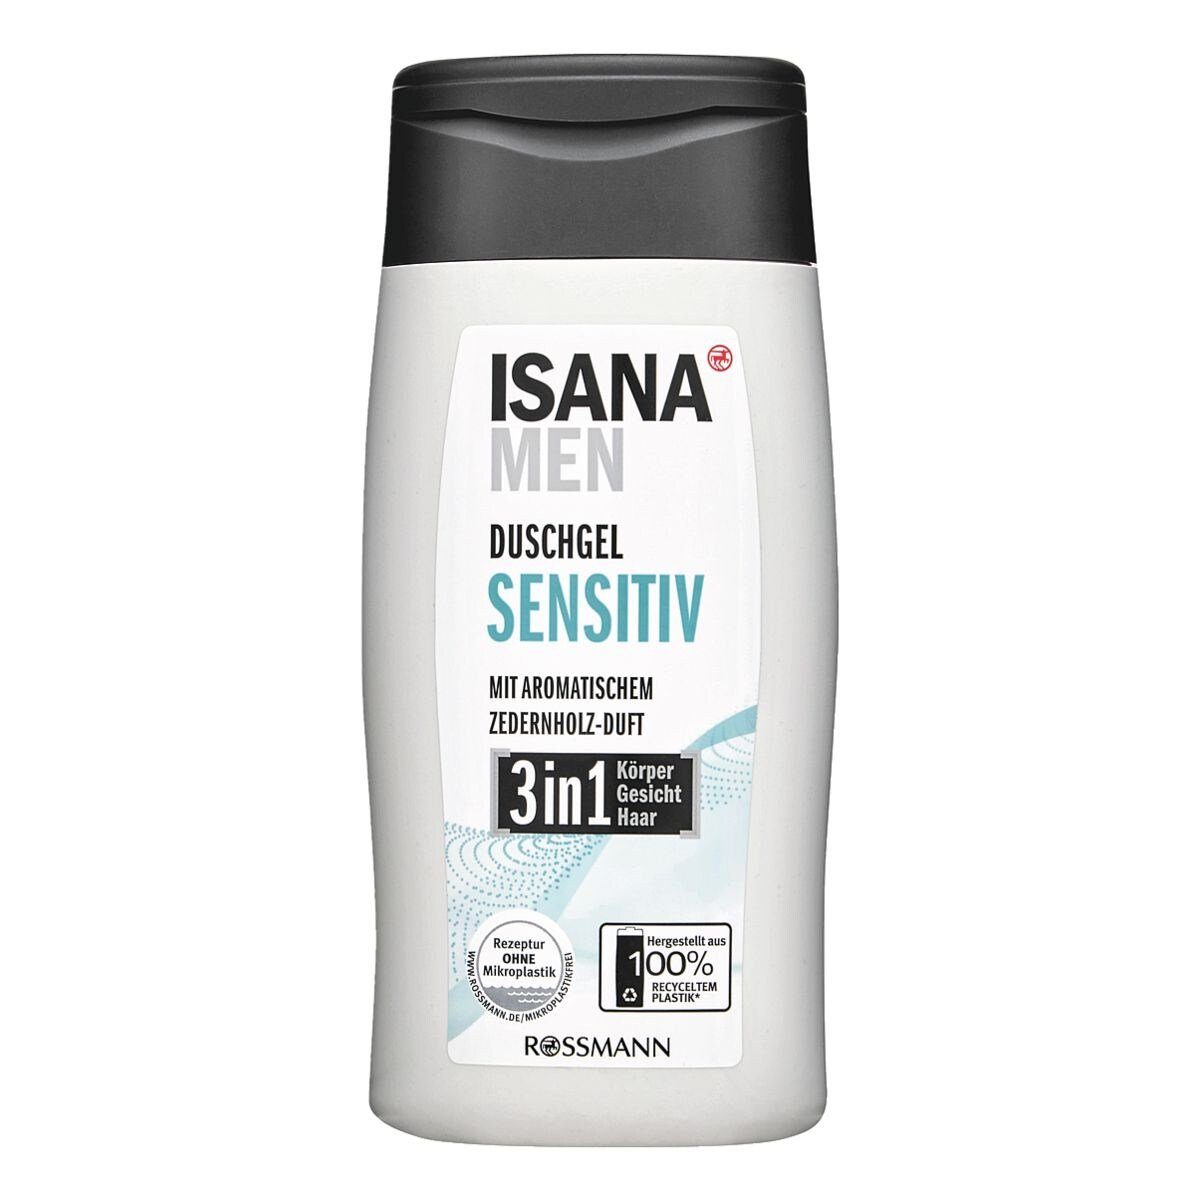 ISANA Duschgel »MEN sensitiv«, 3in1, für Körper/Gesicht/Haare mit  aromatischem Zedernholz-Duft online kaufen | OTTO